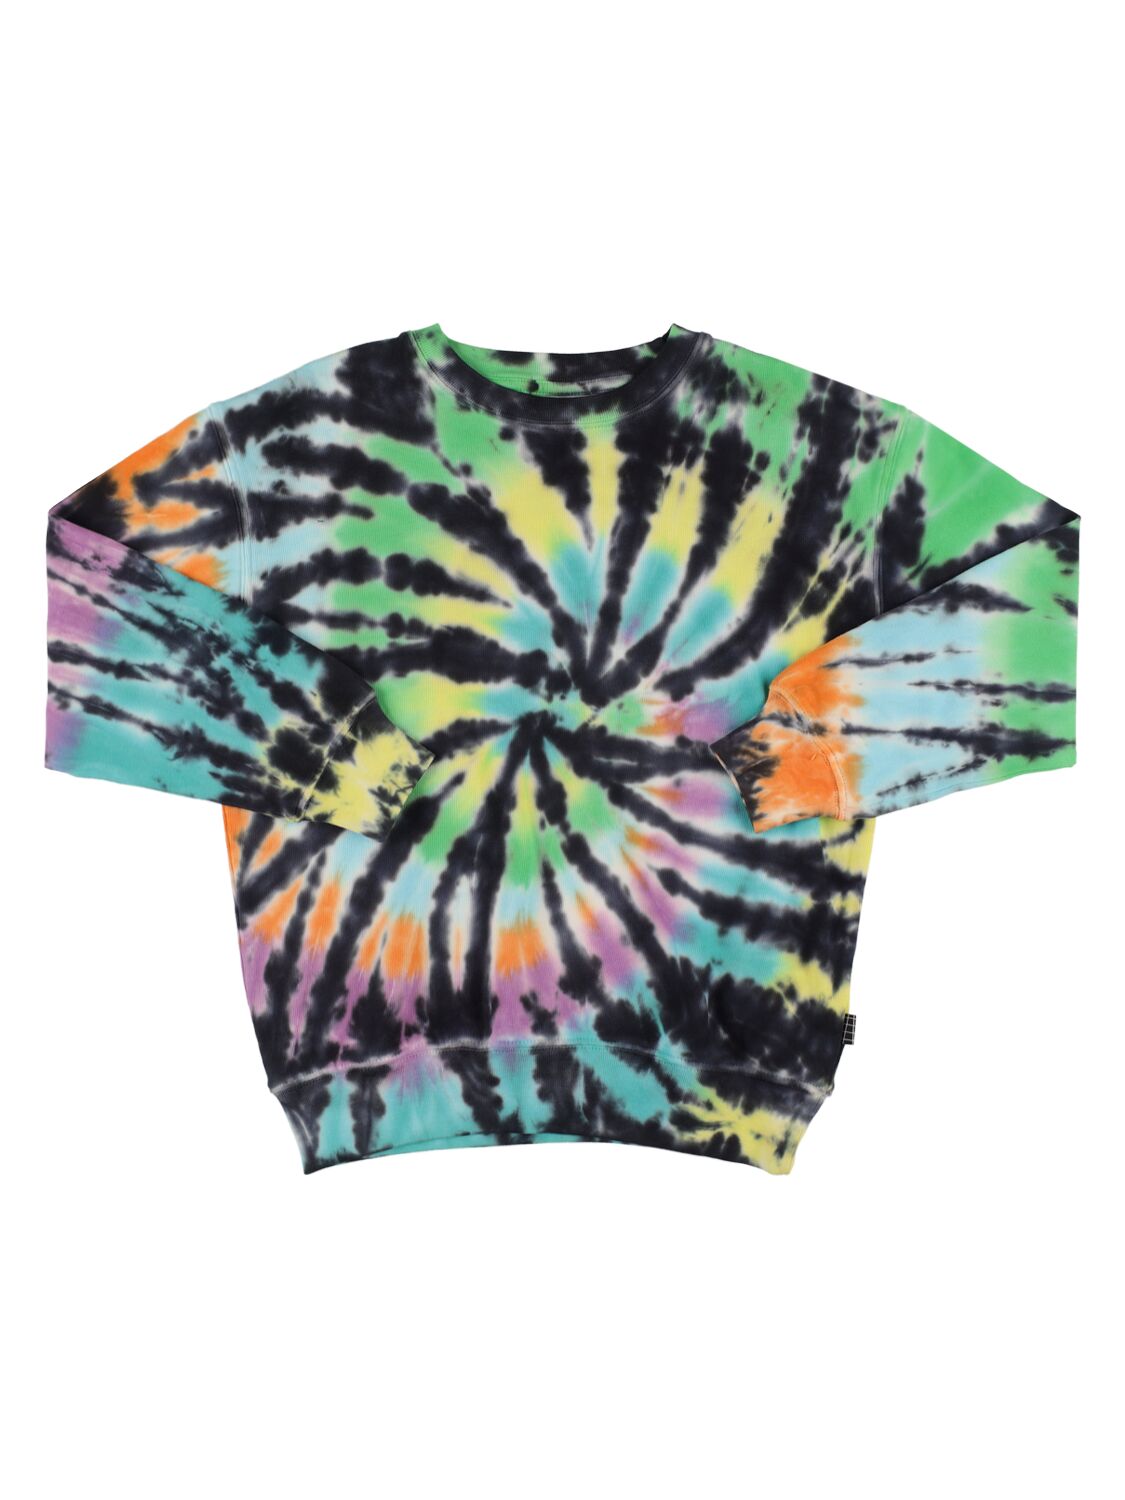 Molo Kids' Tie Dye Print Organic Cotton Sweatshirt In Multi